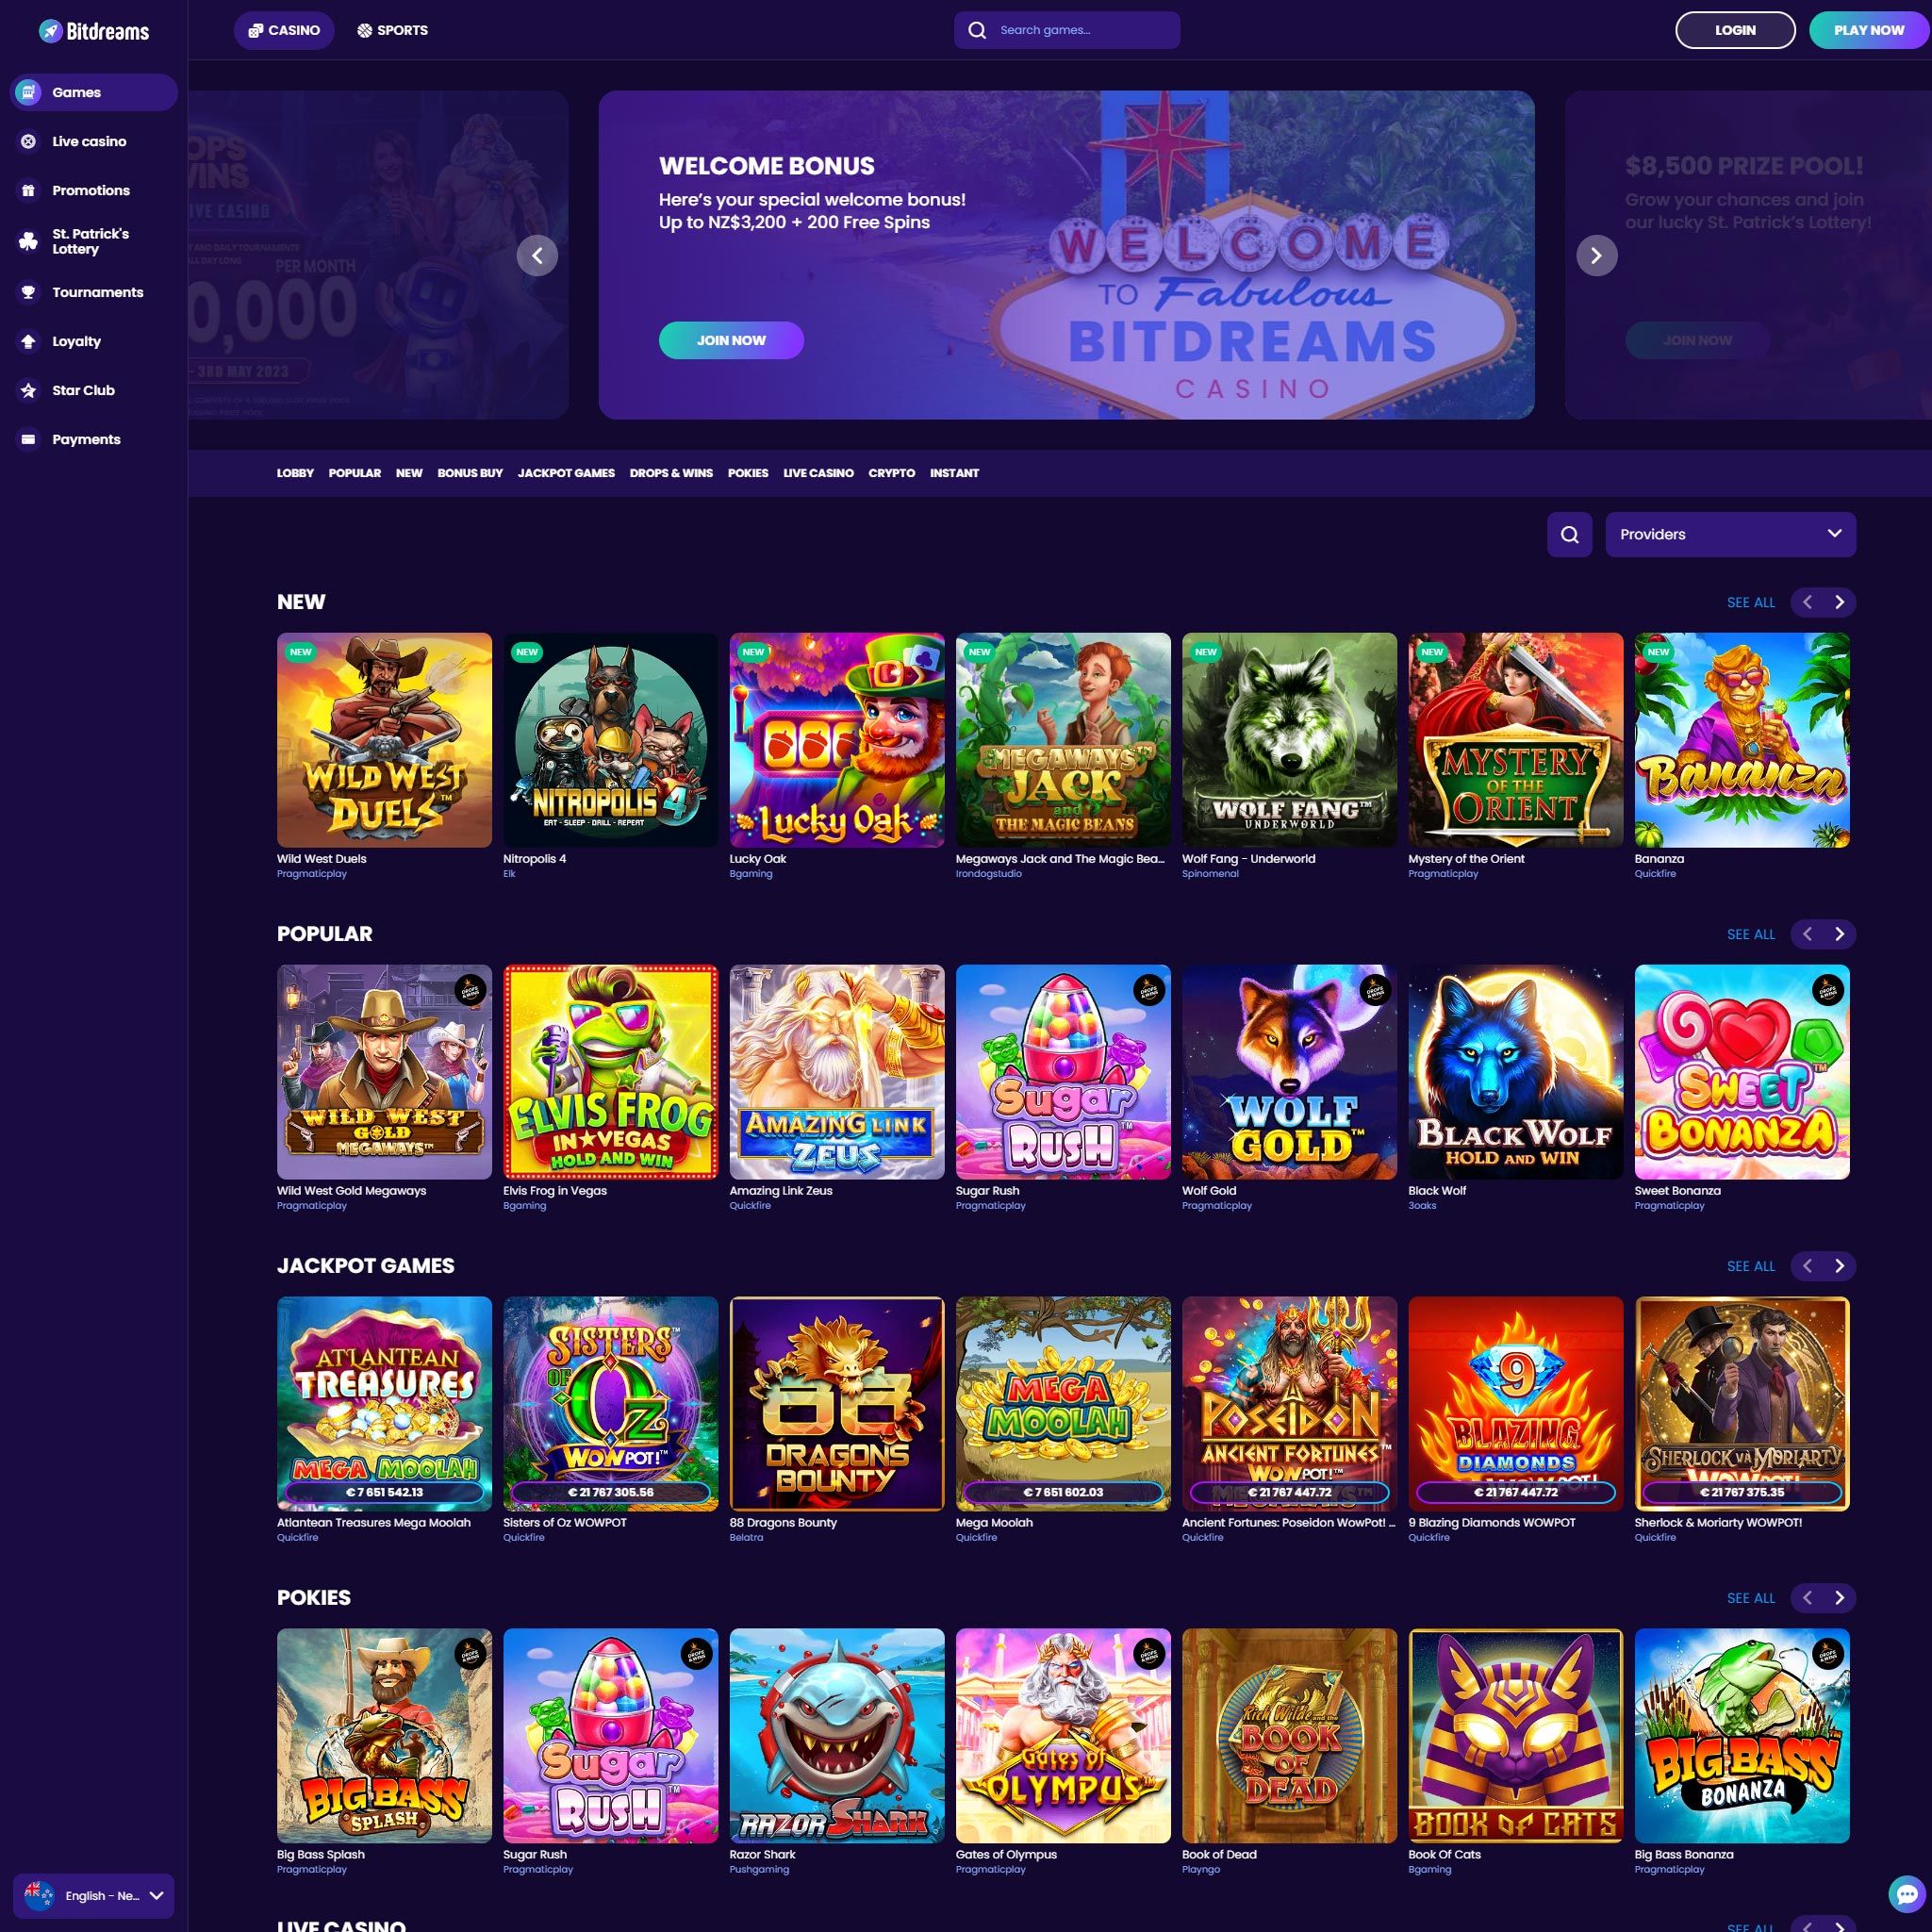 Bitdreams Casino full games catalogue